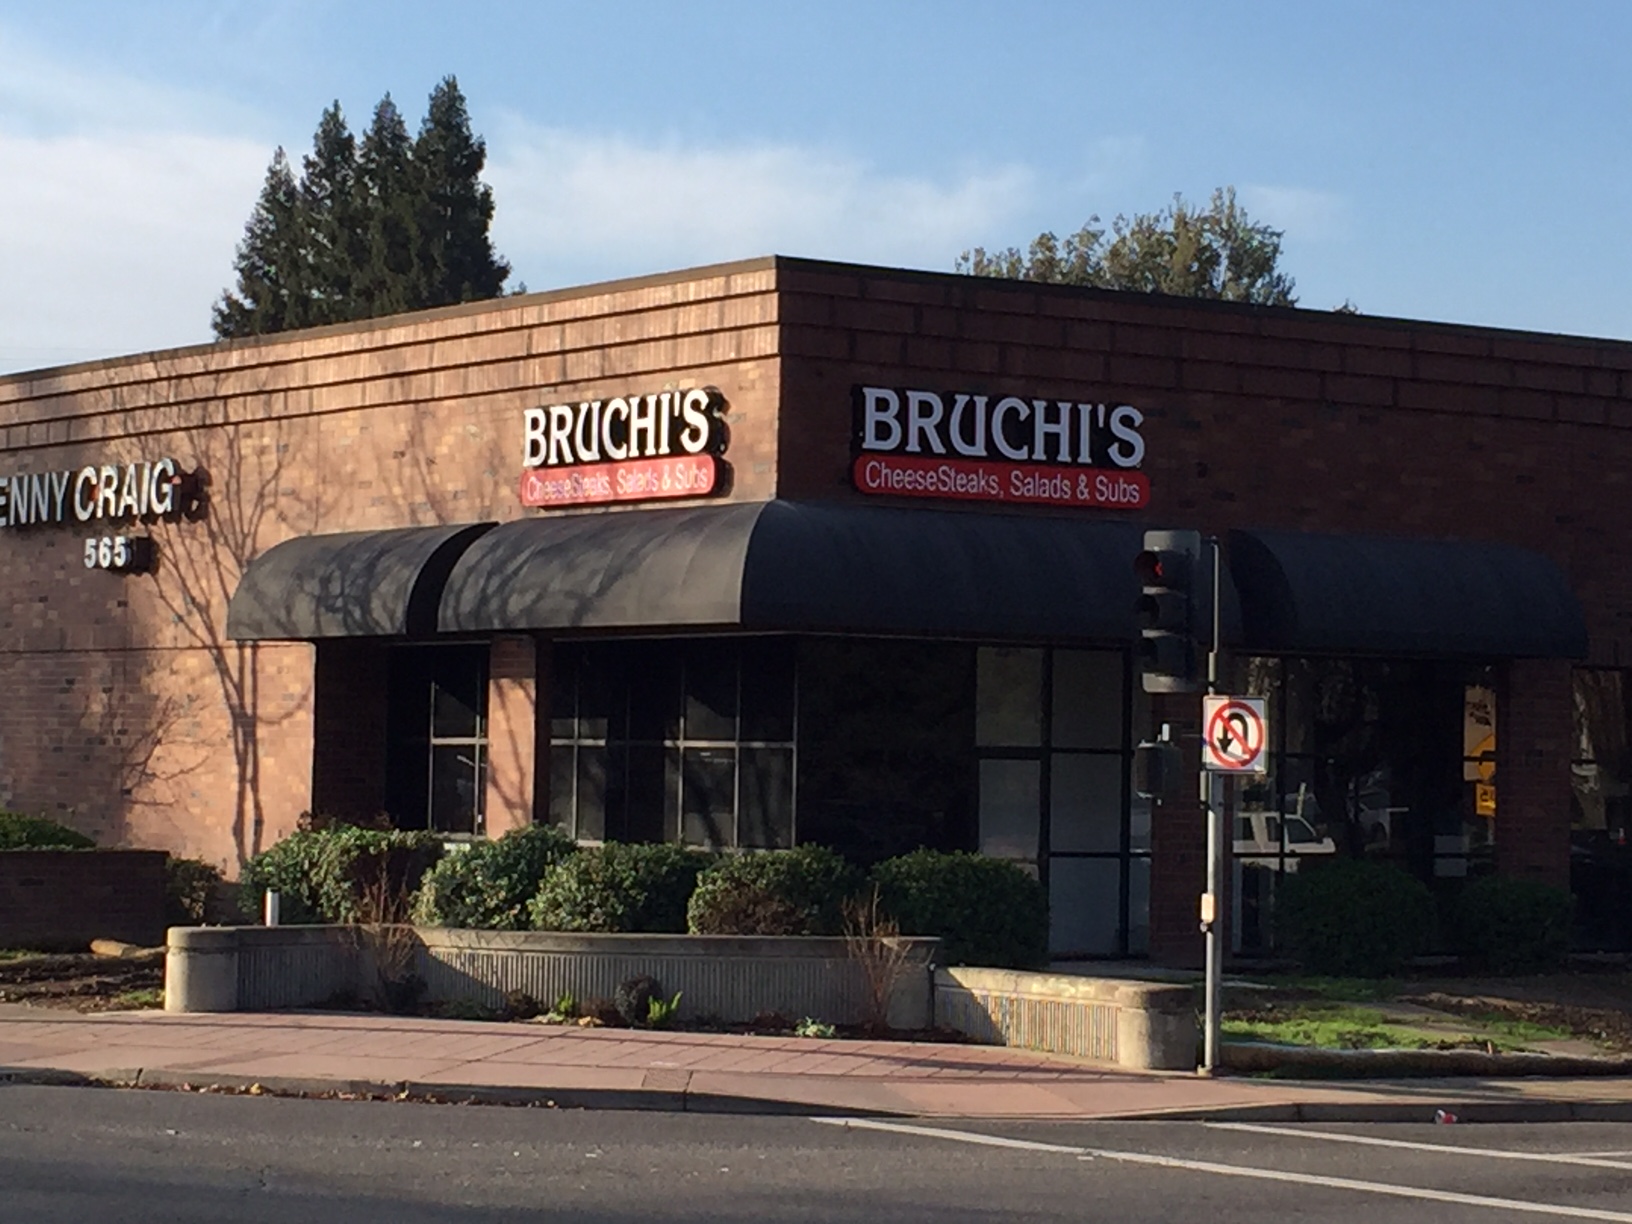 Bruchi's CheeseSteaks & Salads